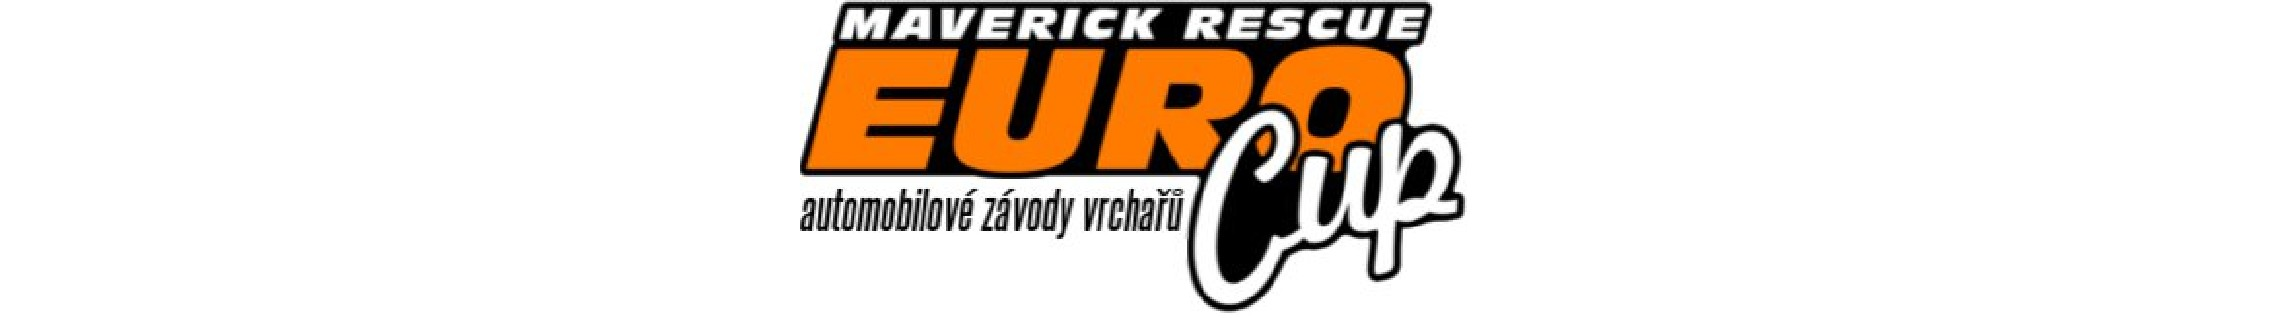 Maverick.rescue Euro Cup 213 II. Bratrušovské serpentíny 16. - 1.